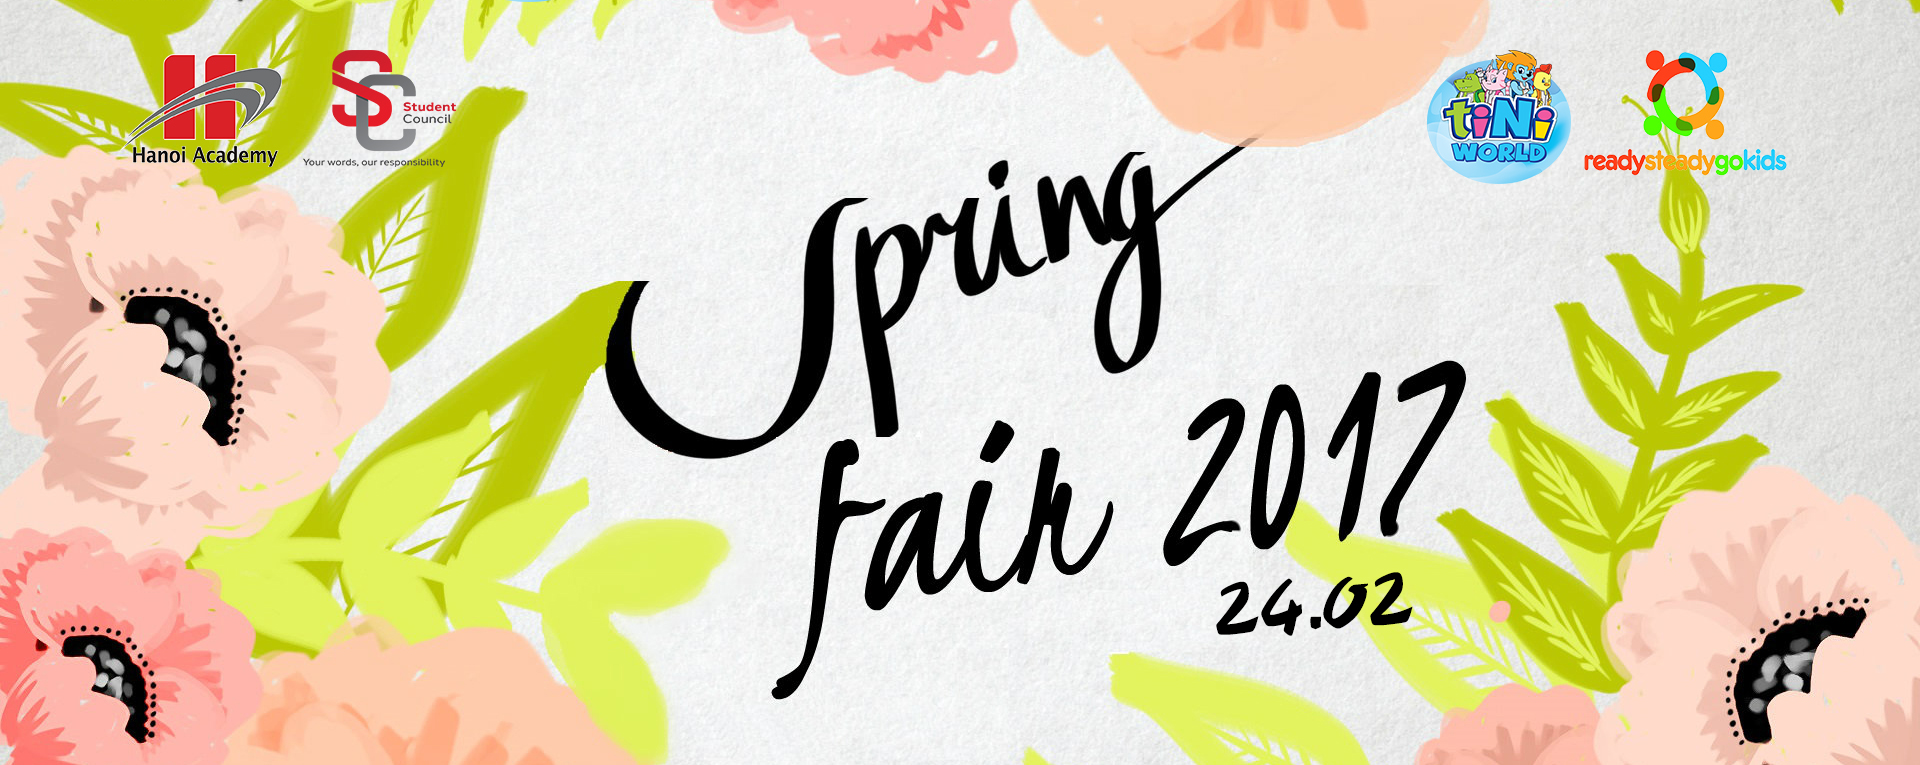 Hội chợ Xuân – Spring Fair  Hội chợ Xuân – Spring Fair 2017